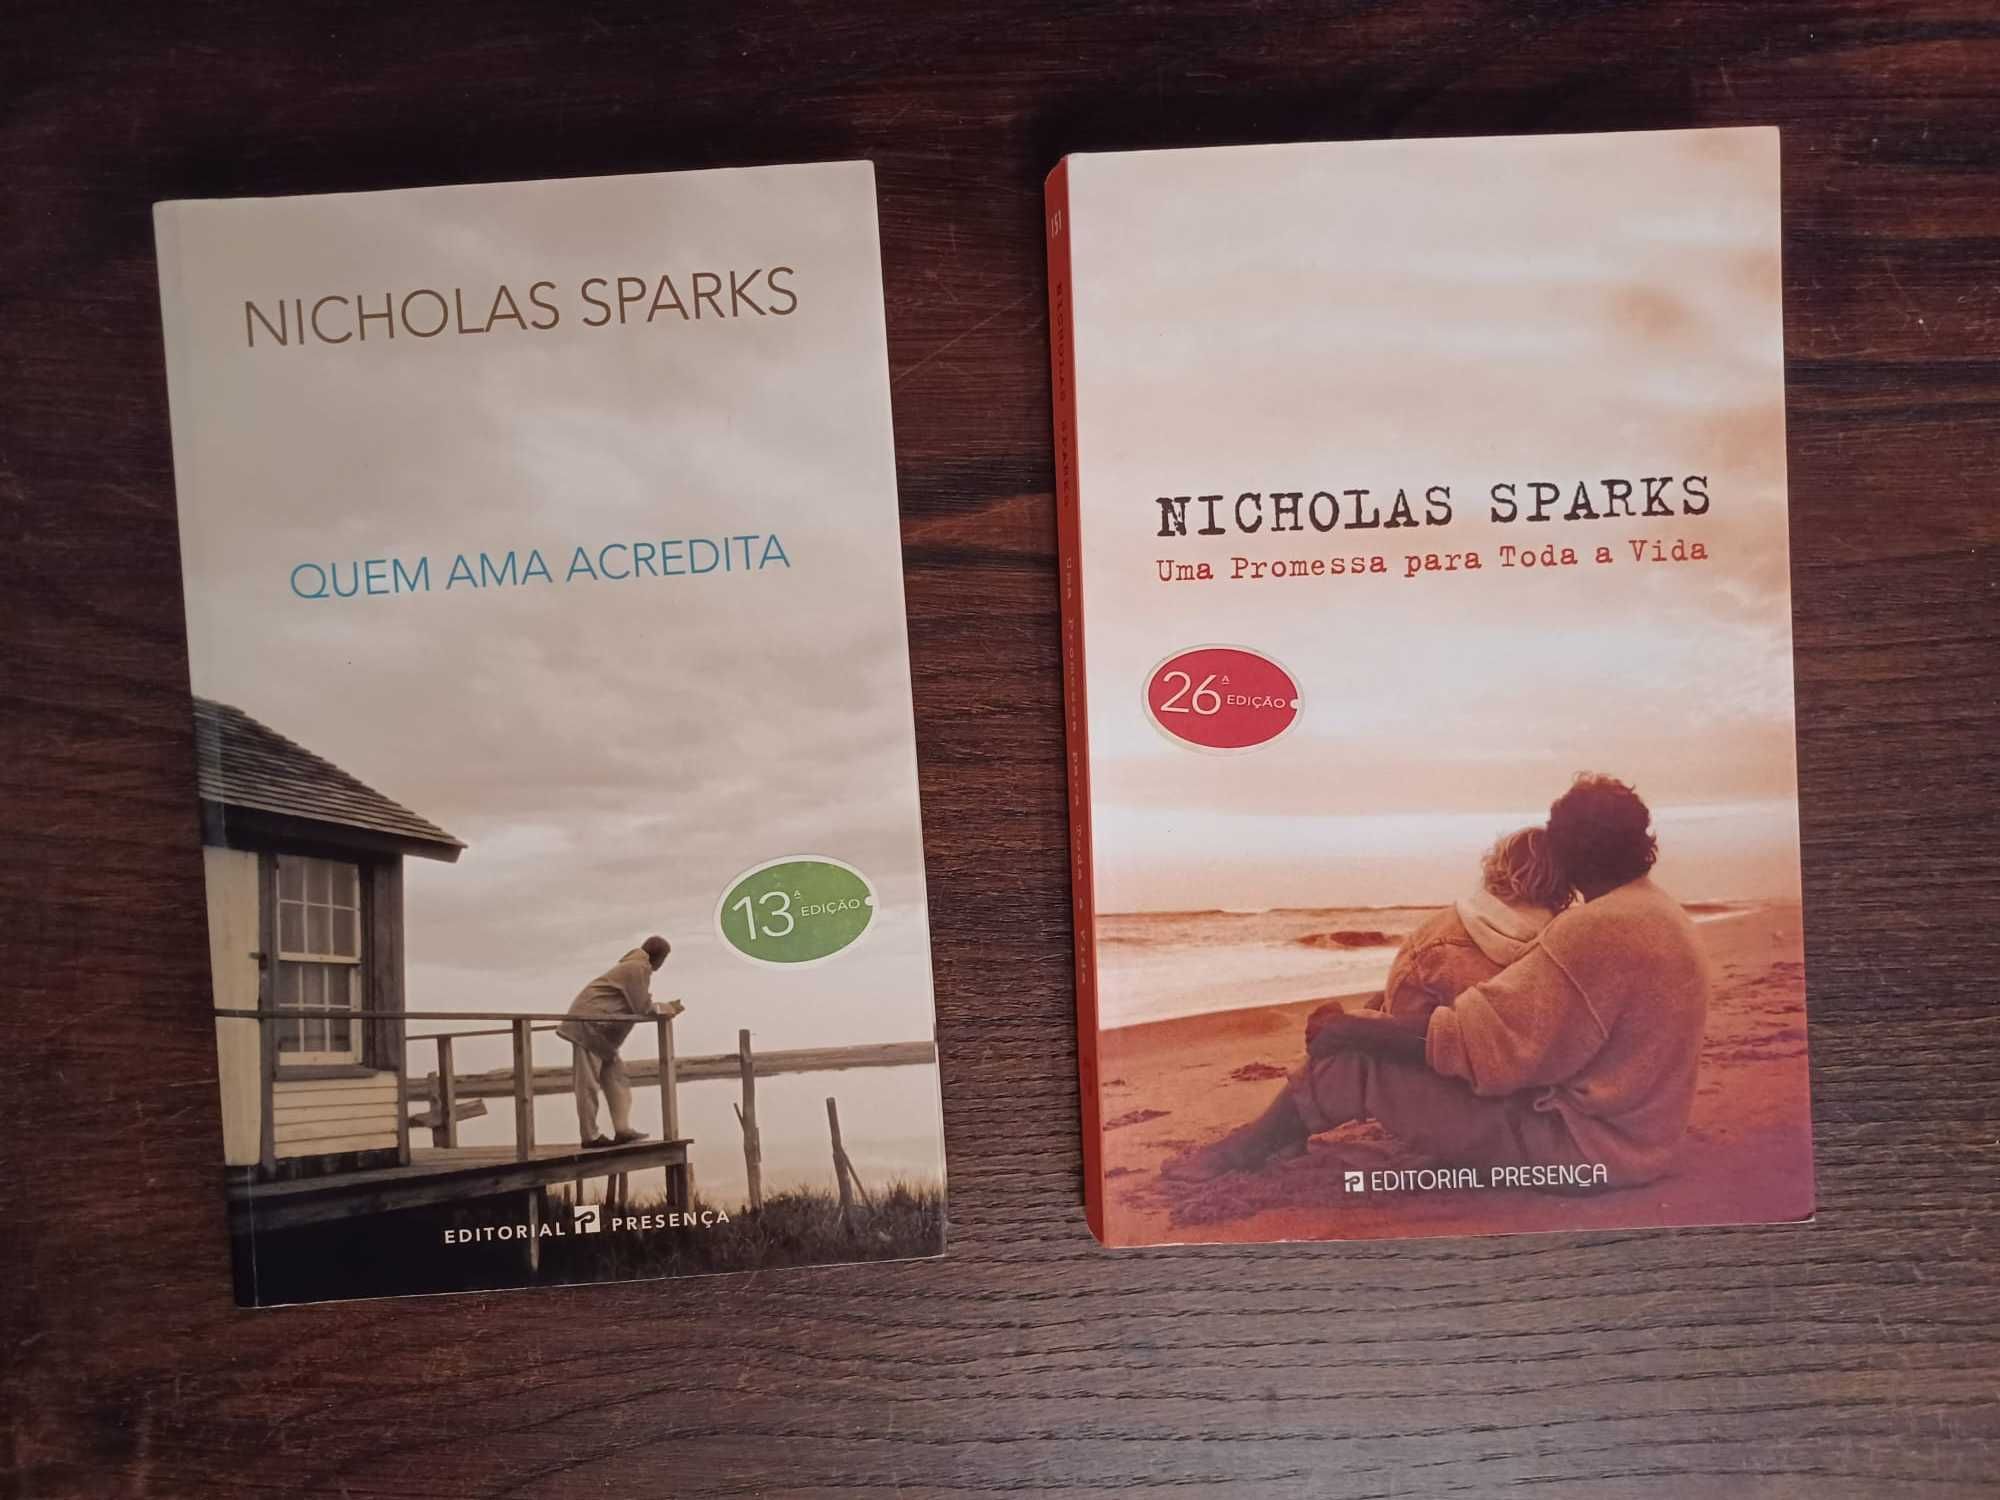 Nicholas Sparks - Quem ama acredita / Uma promessa para toda a vida